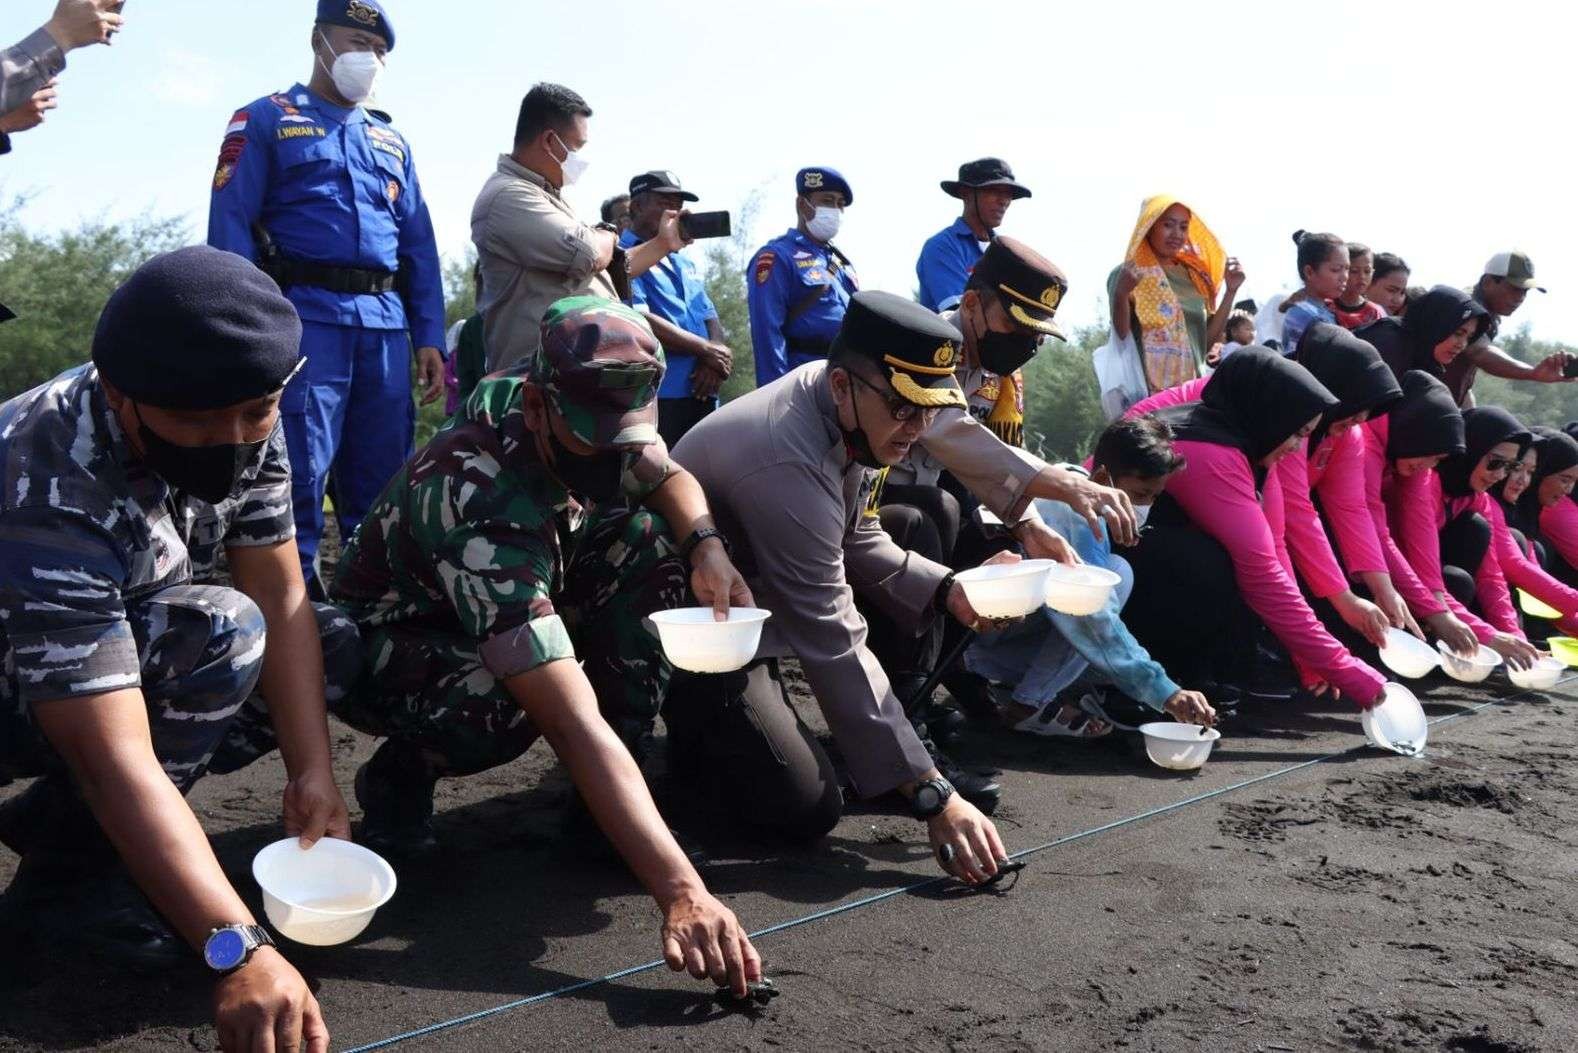 Polresta Banyuwangi bersama TNI melakukan pelepasan tukik di kawasan Pantai Cemara (Foto: Istimewa)